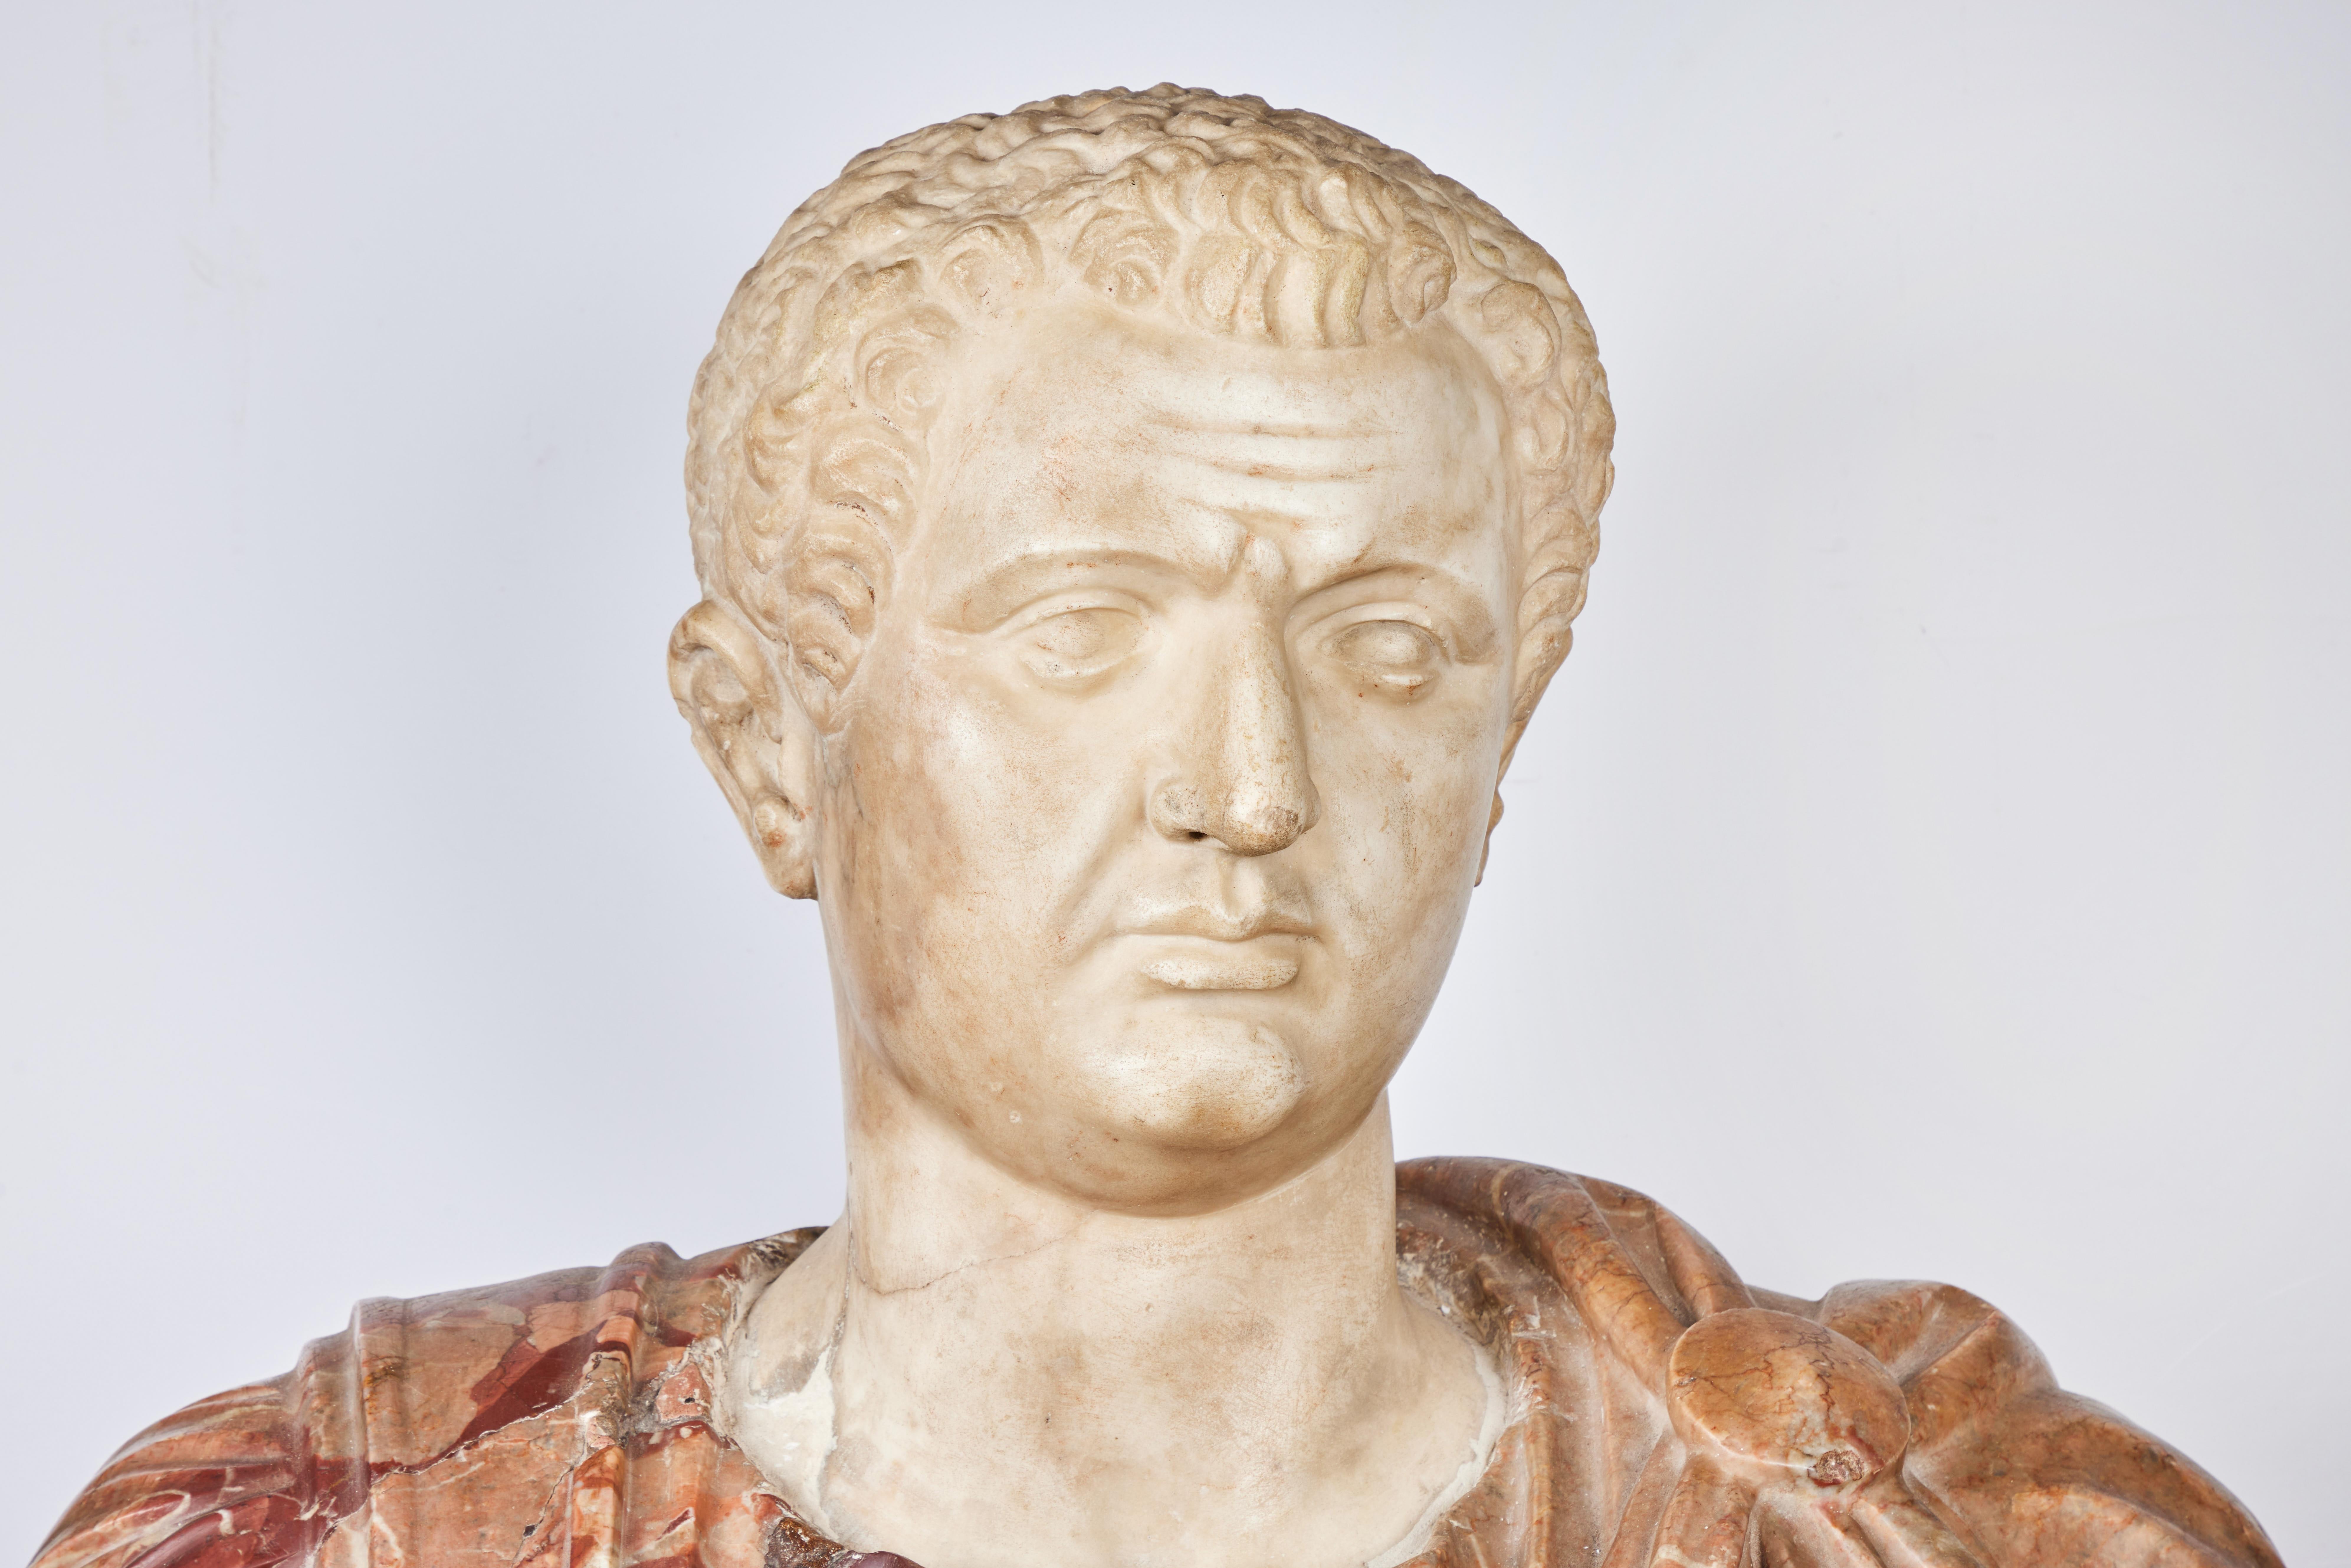 Eine wunderschön handgeschnitzte römische Marmorbüste eines Kaisers oder Senators. Das reich drapierte Gewand zeigt ein Relief eines Gesichts.